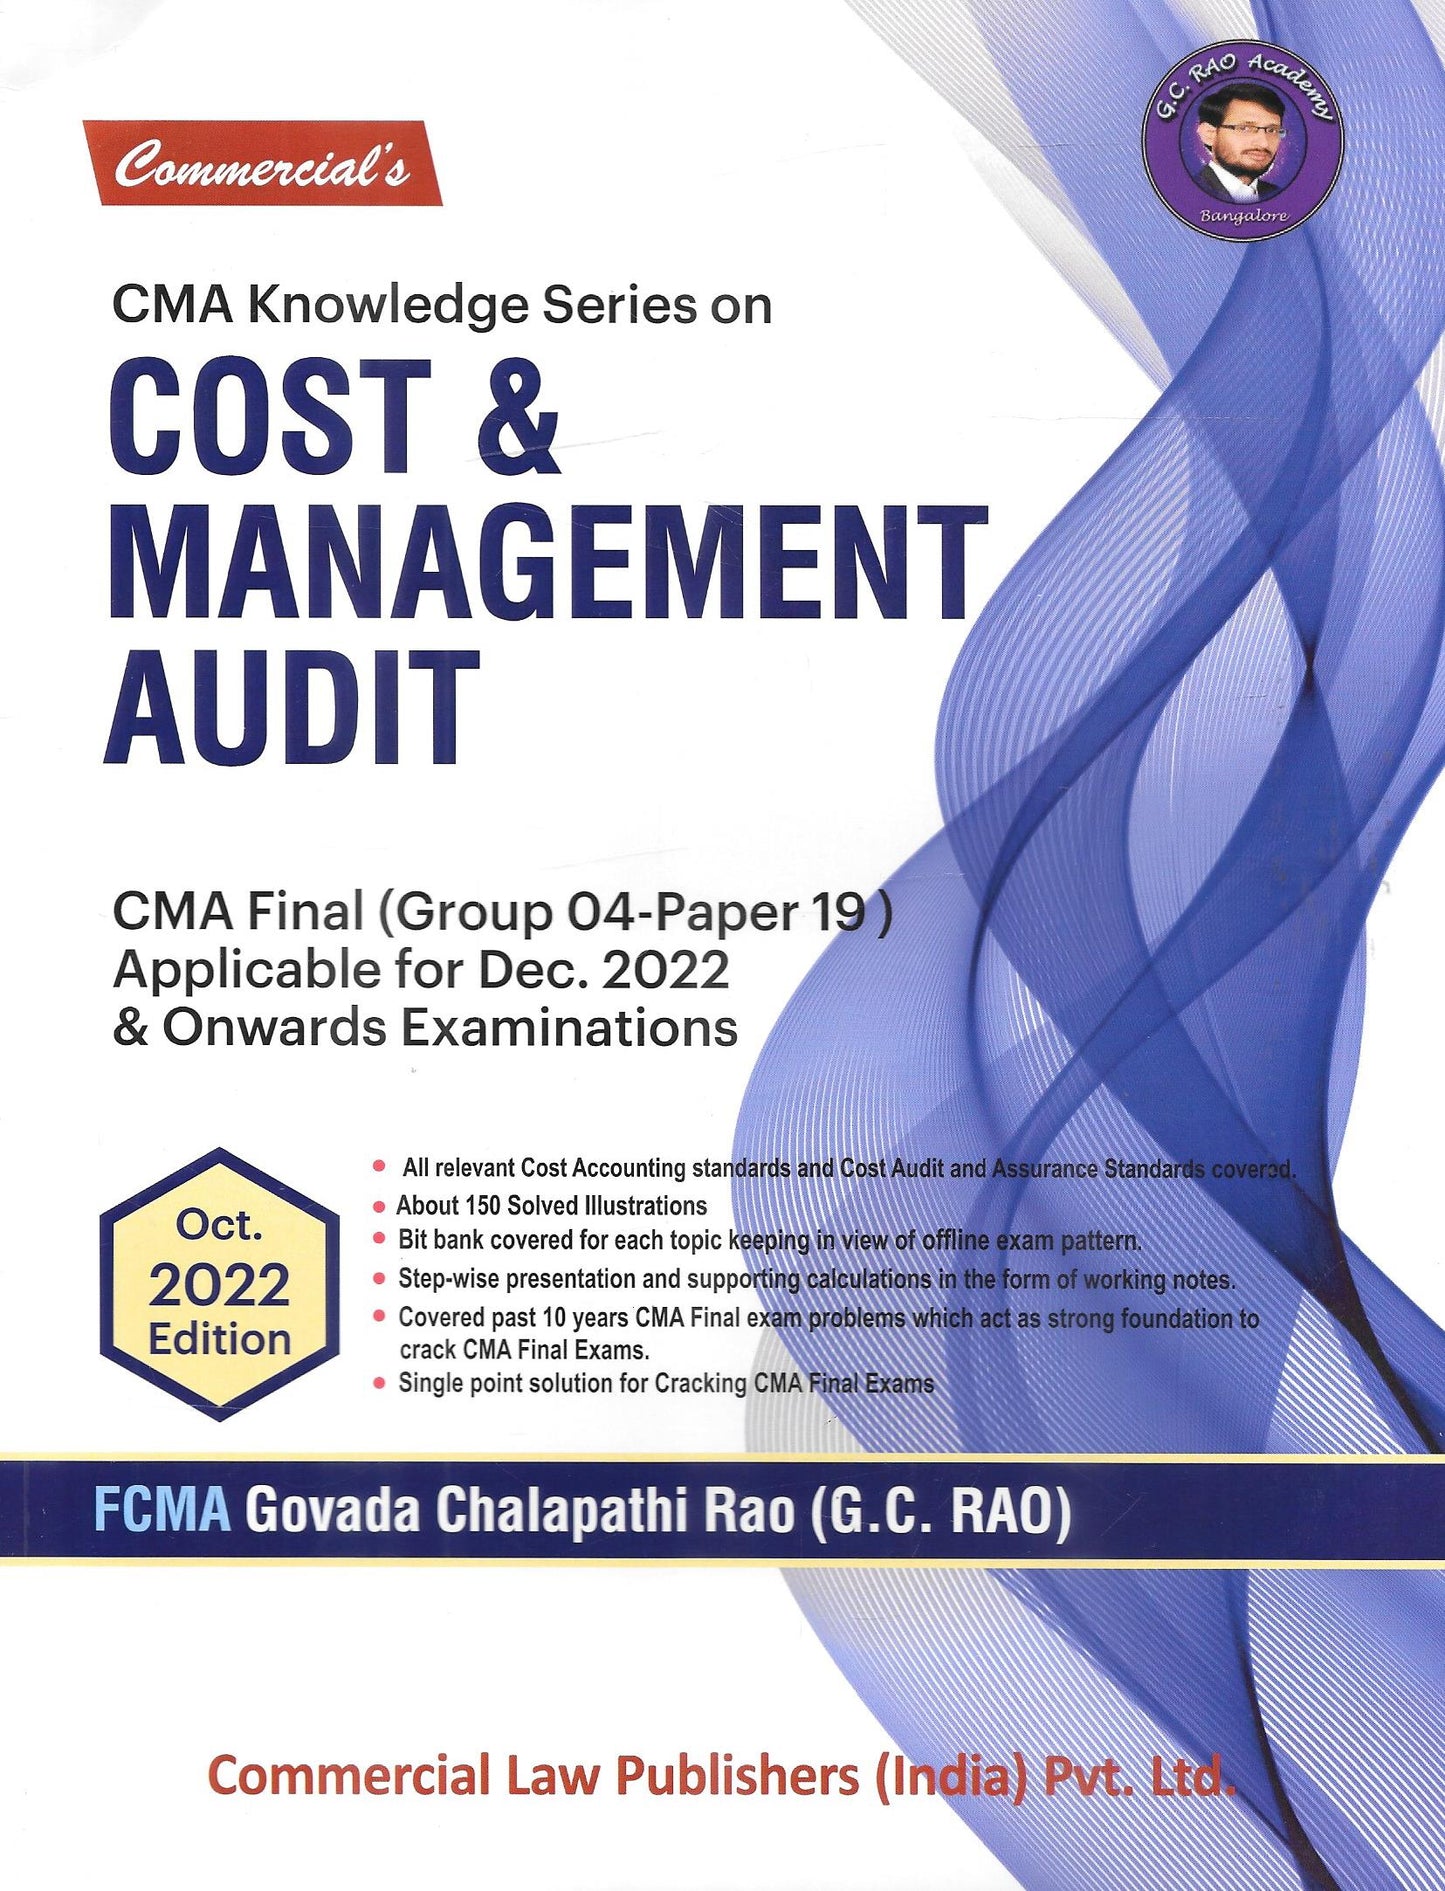 Cost & Management Audit